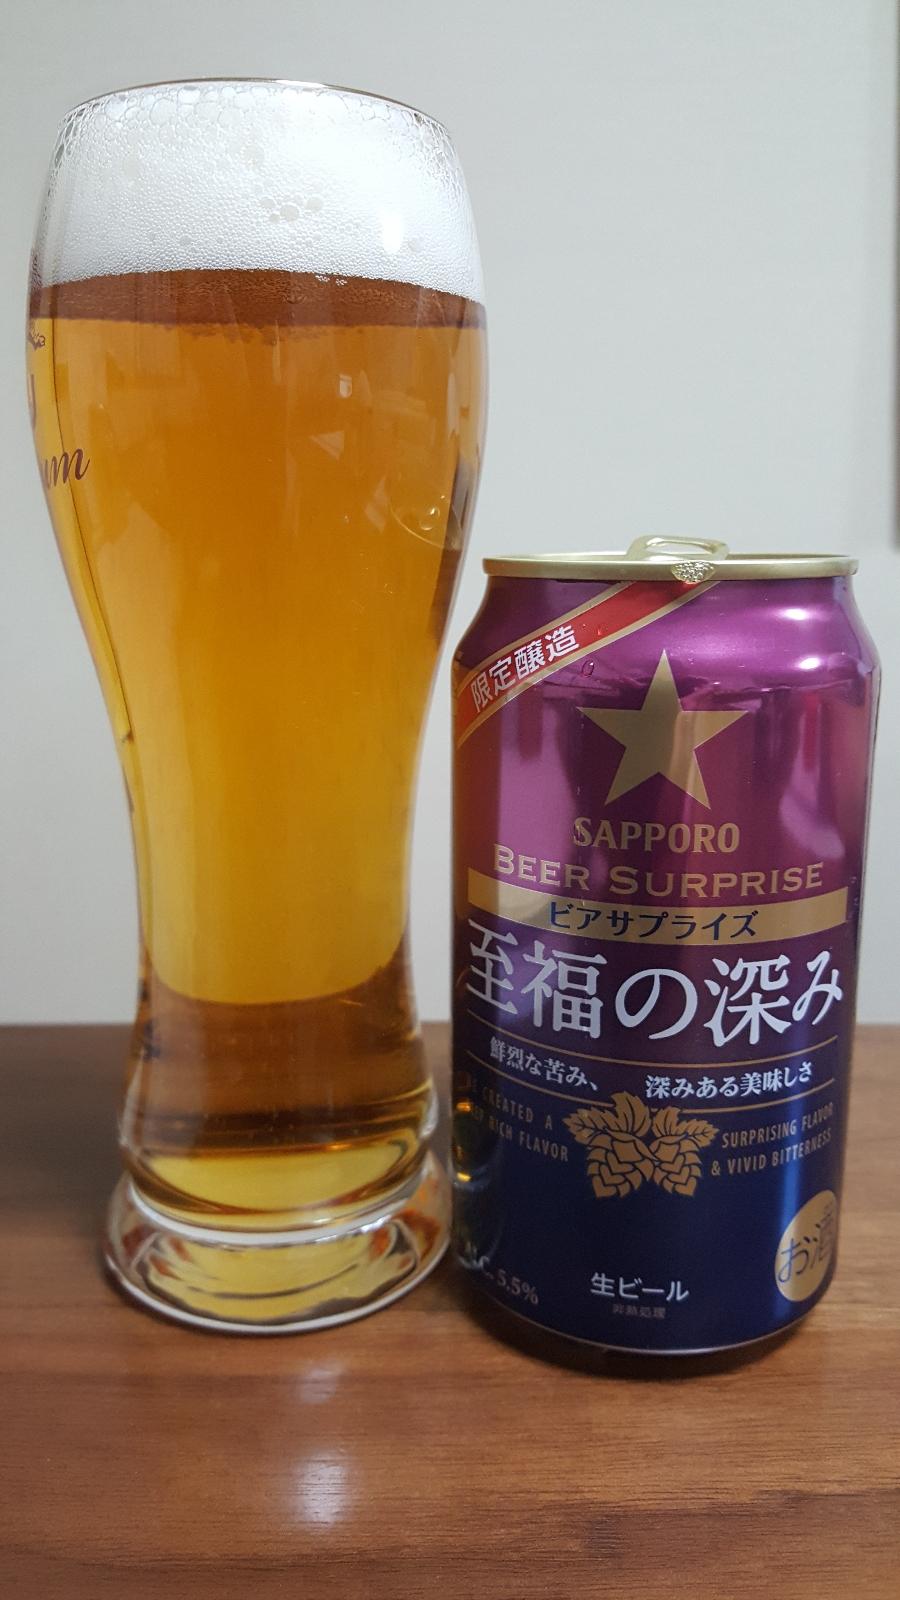 Beer Surprise: Shifuku no Fukami